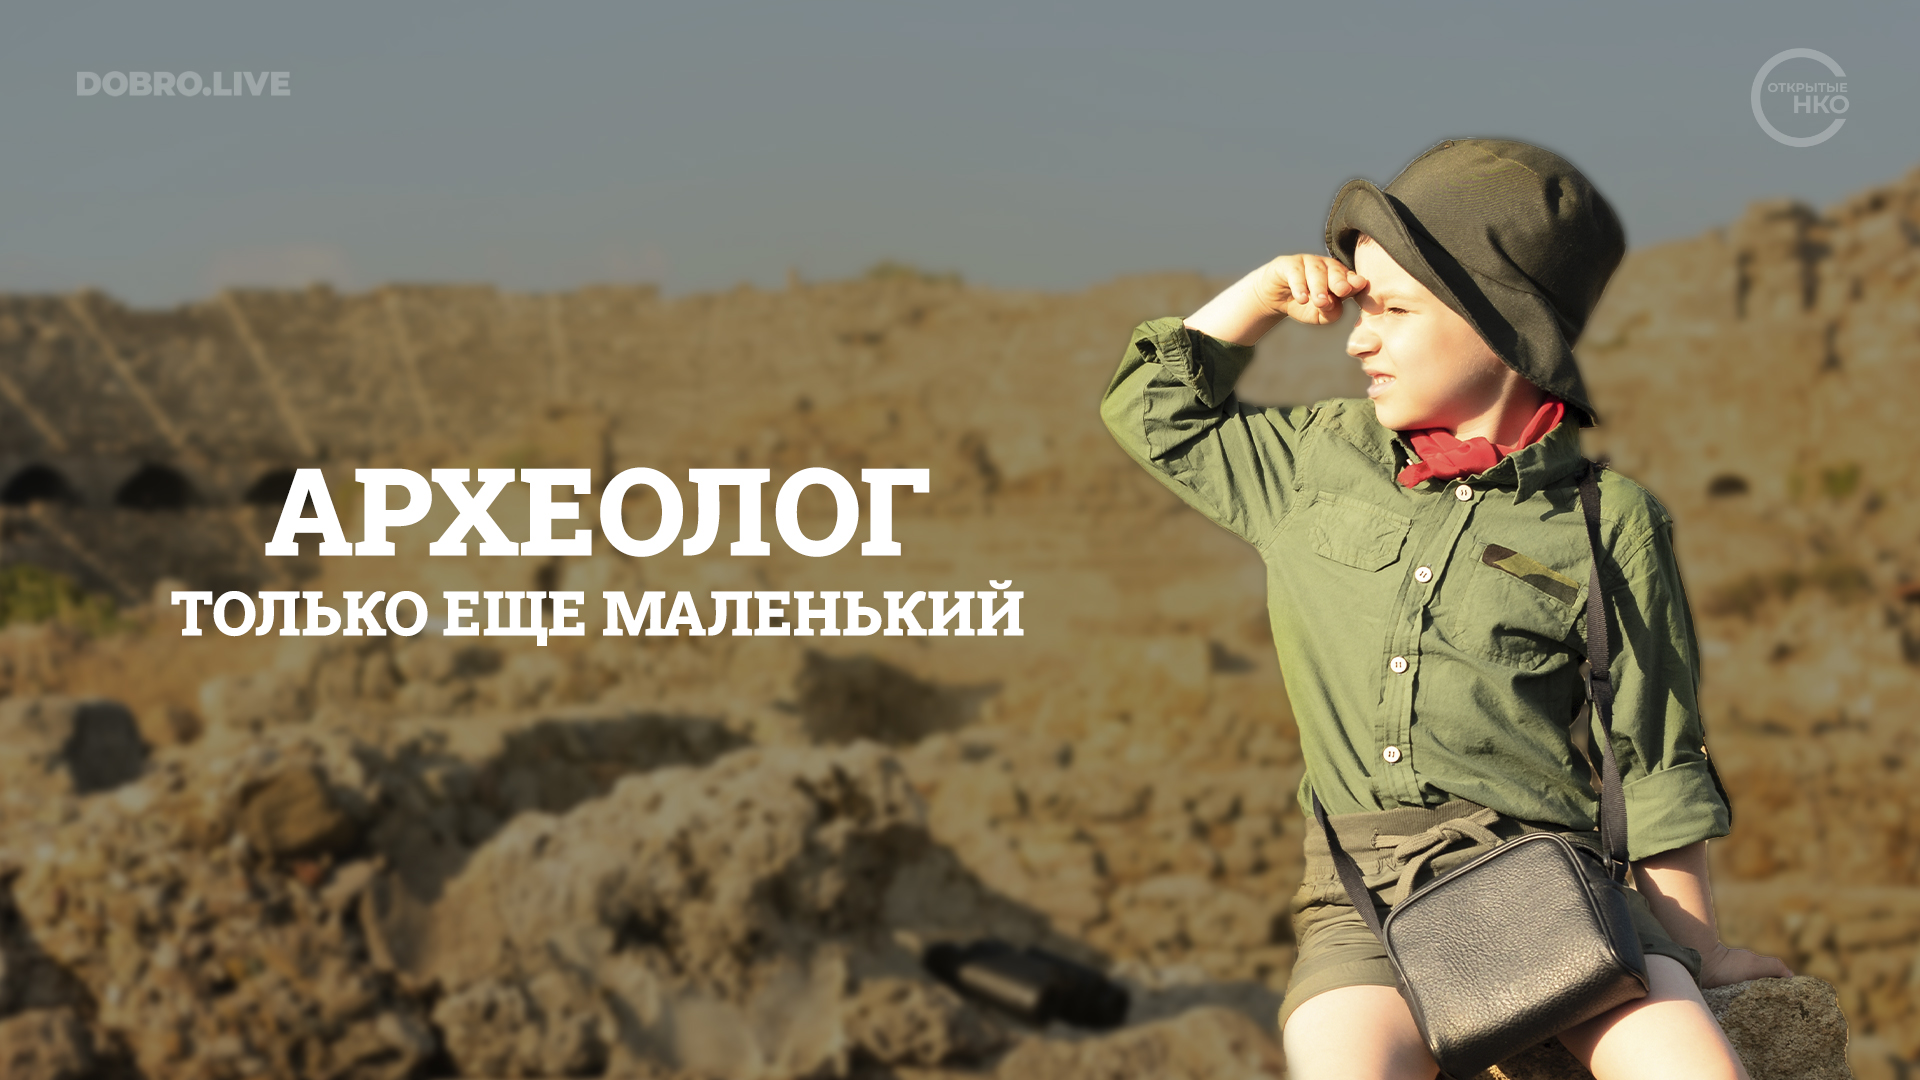 В Красноярском крае возрождают археологические лагеря для детей